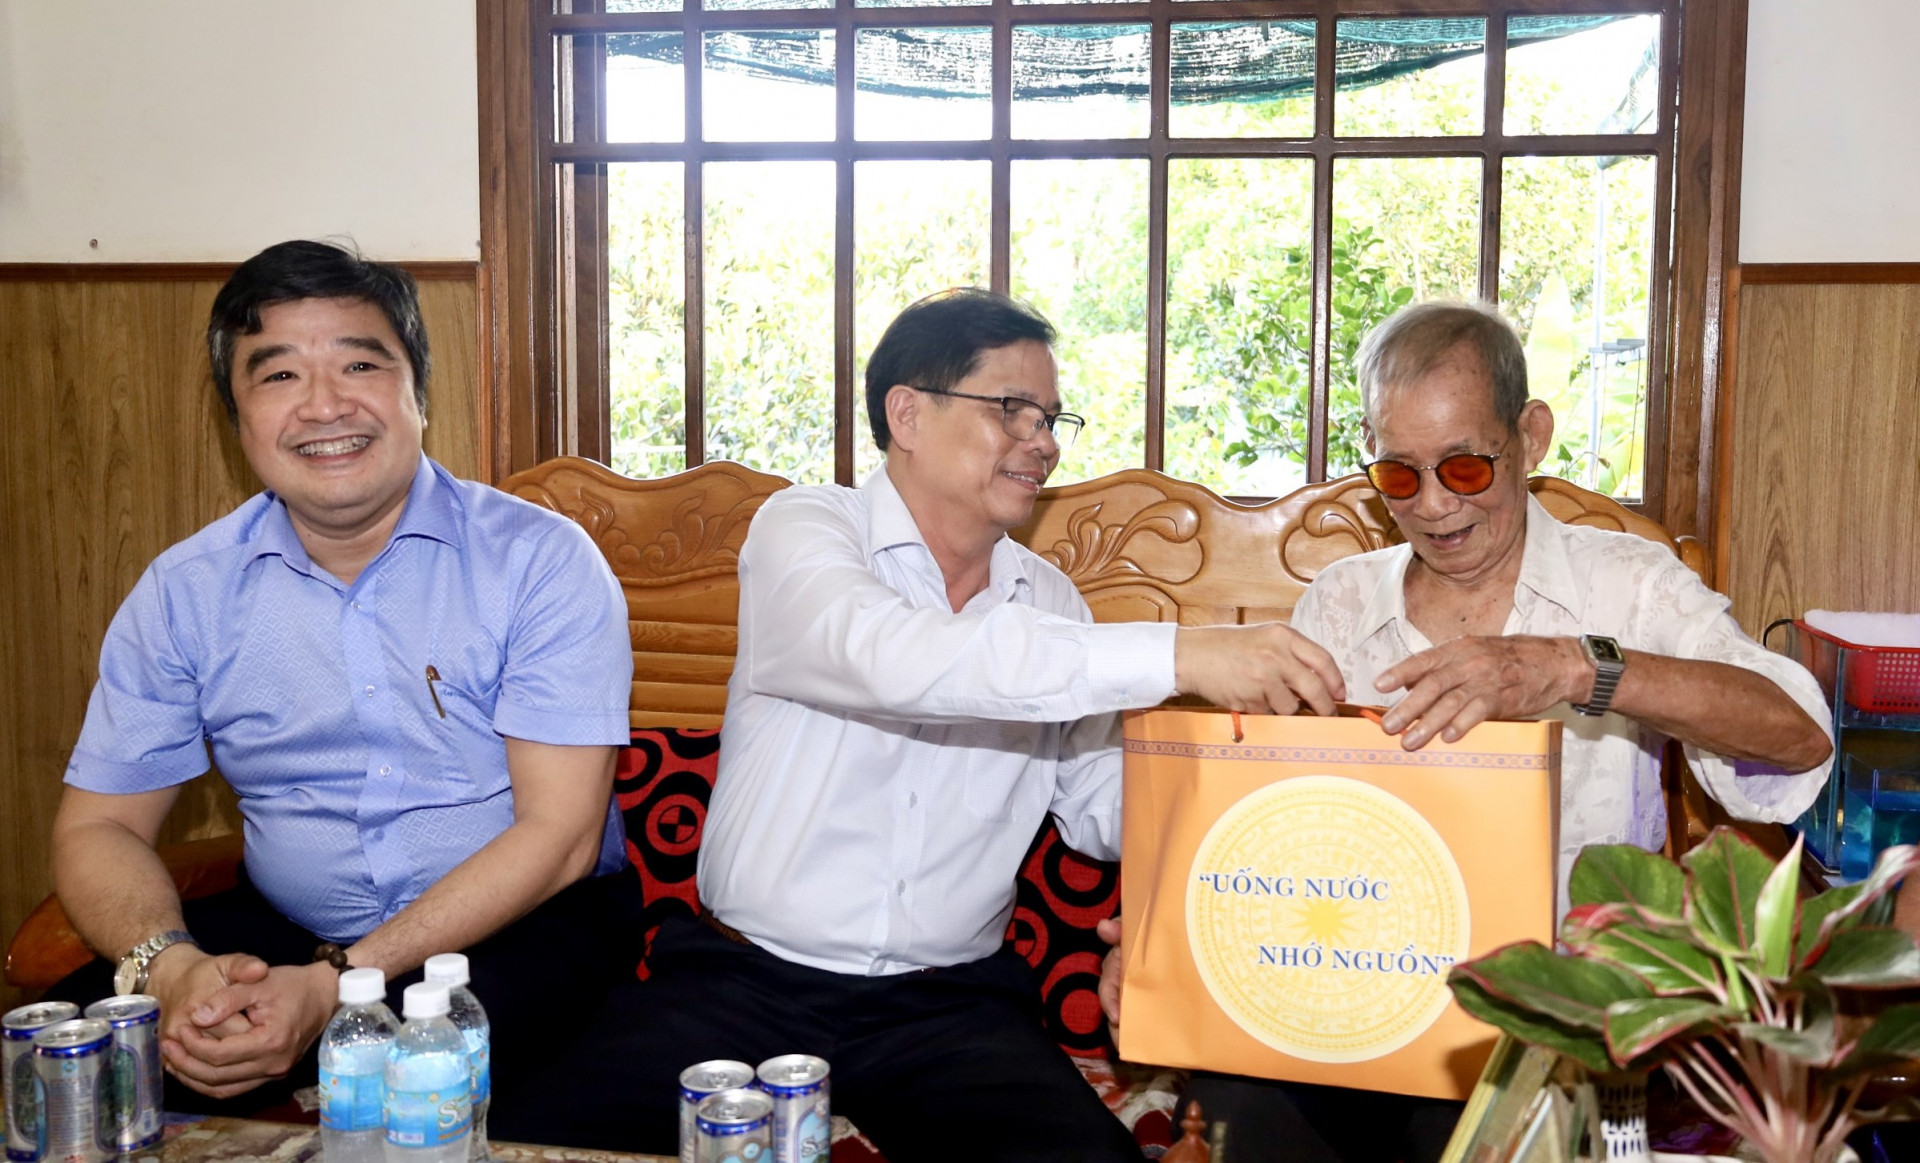 Đồng chí Nguyễn Tân Tuân thăm hỏi, tặng quà cho ông Nguyễn Văn Triết.